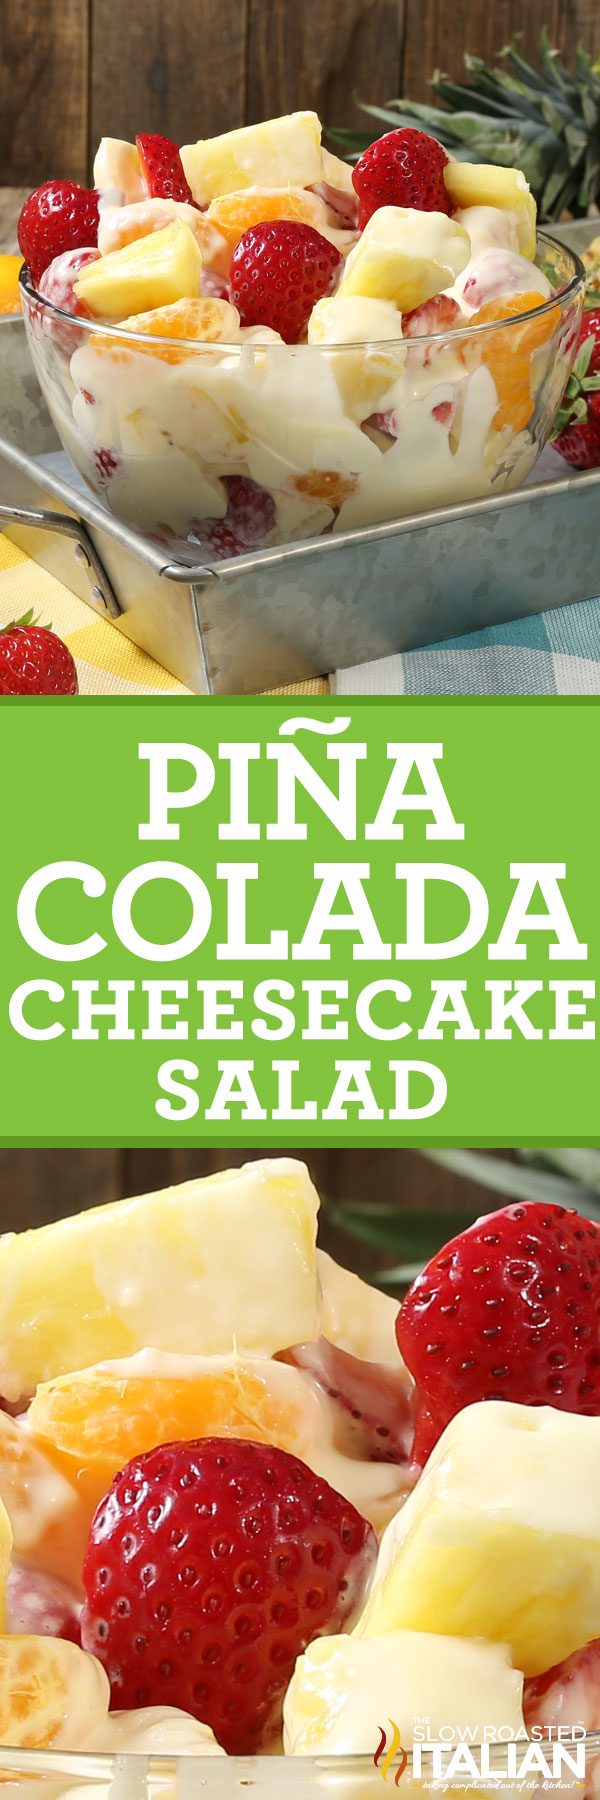 pina-colada-cheesecake-salad-pin-9602063